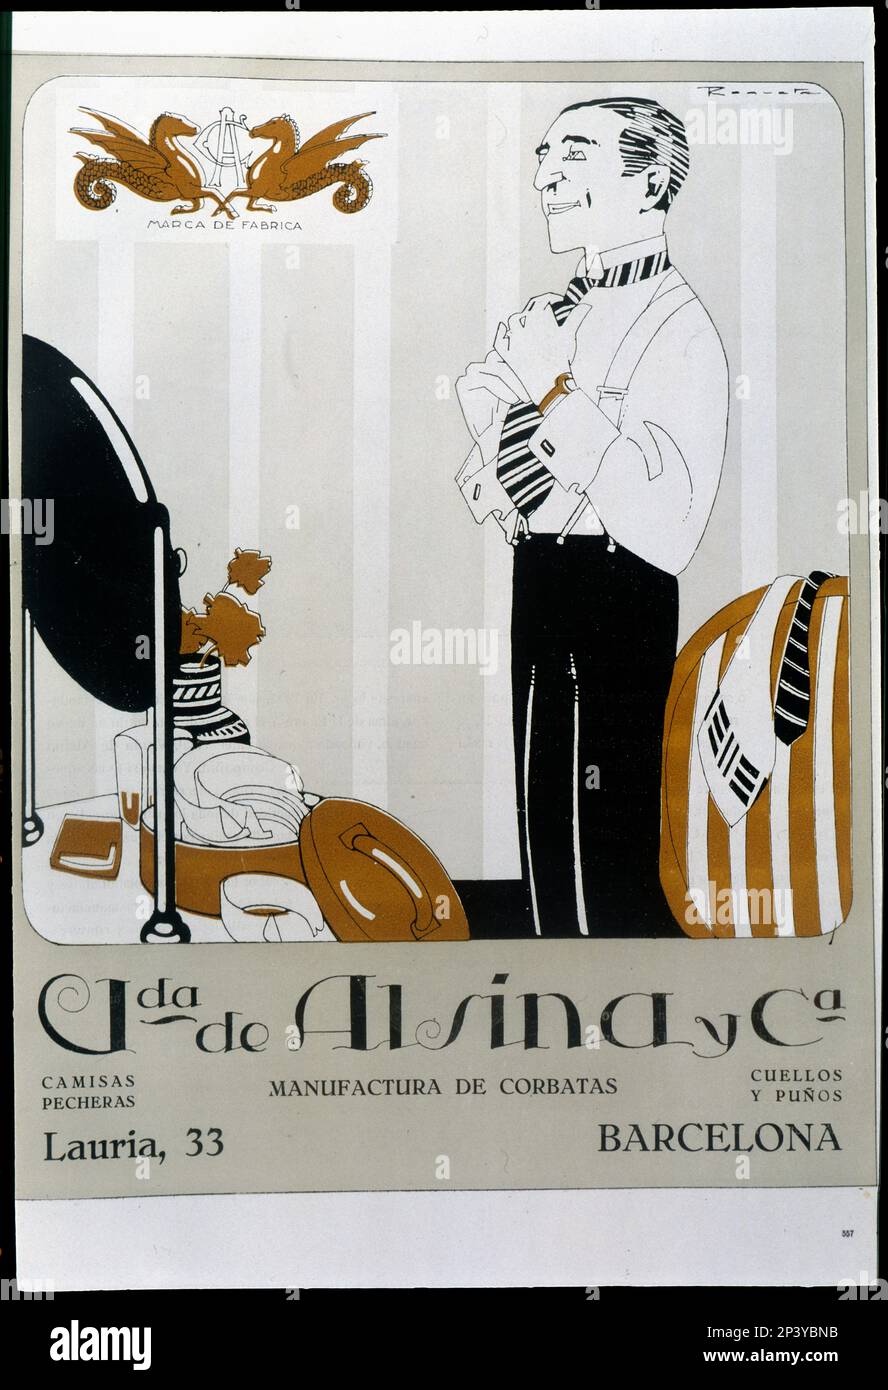 Vda Für Hauswerbung. De Alsina y Cia de Barcelona, Herstellung von Krawatten, Hemden, Kragen und Manschetten, gegründet 1870, 1921. Stockfoto